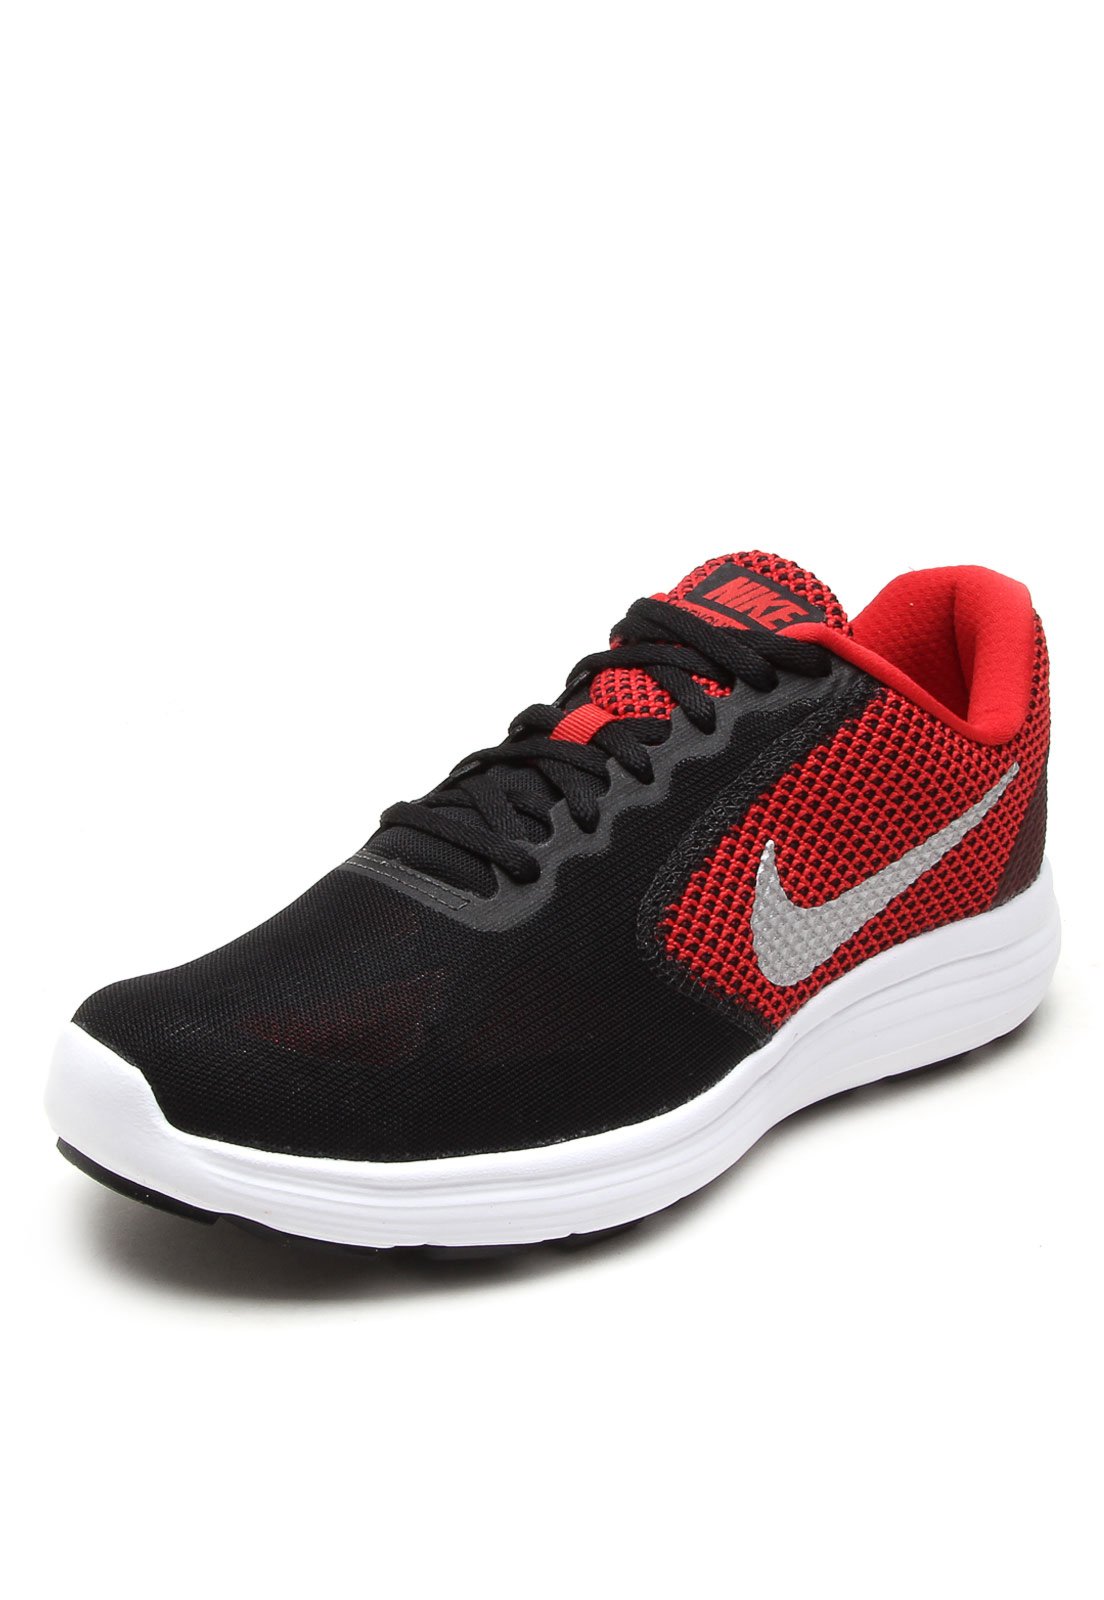 Tênis Nike Revolution 3 Vermelho/Preto - Compre Agora